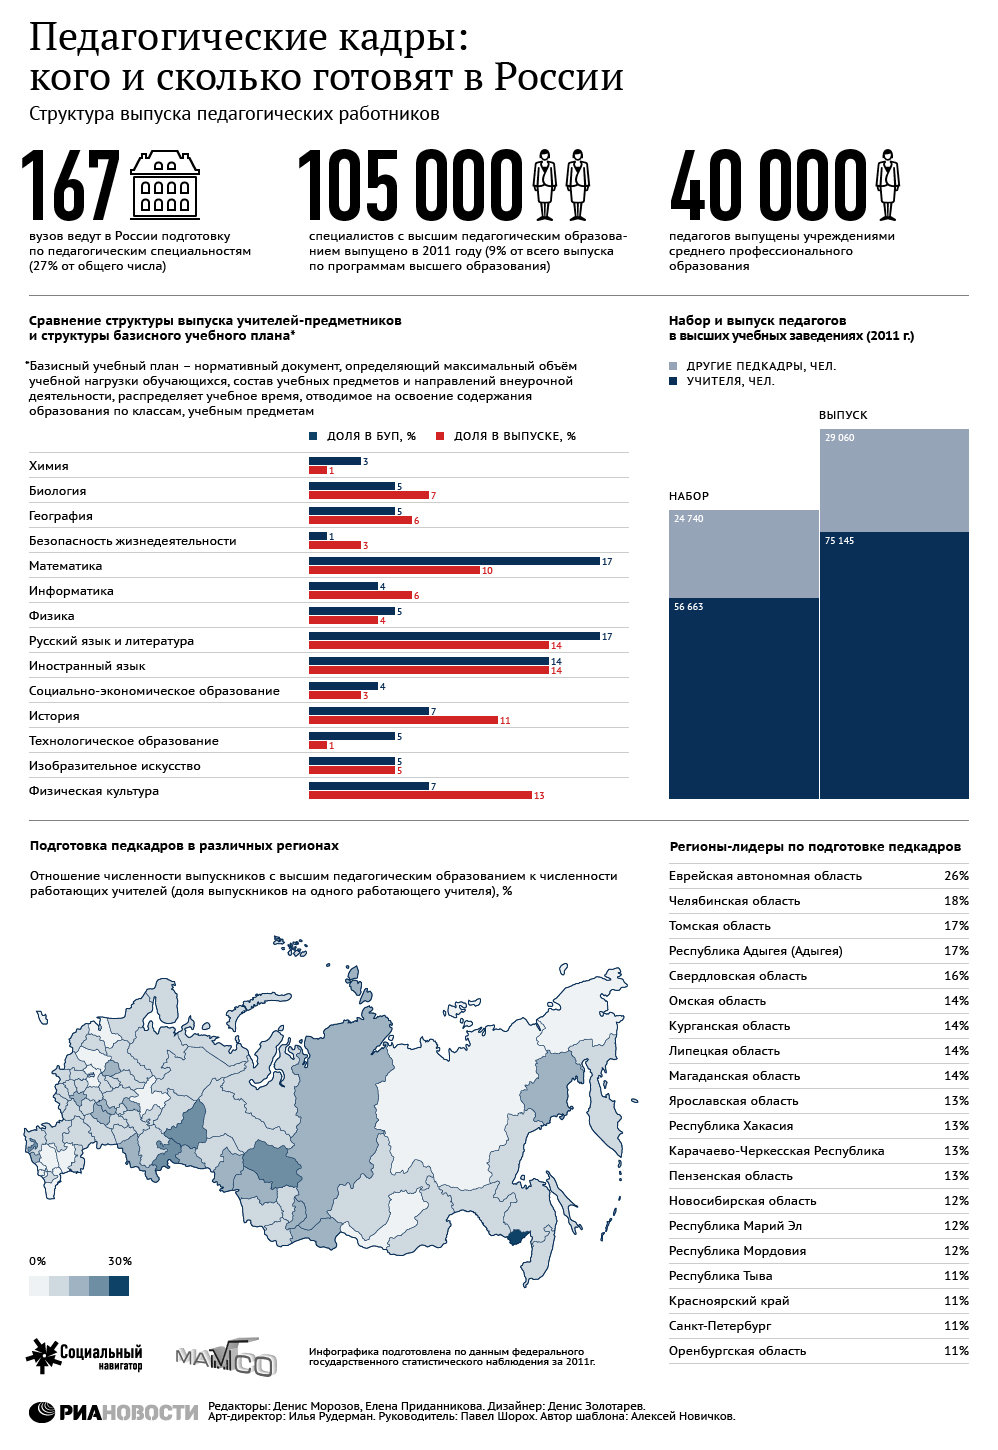 Педагогические кадры: кого и сколько готовят в России